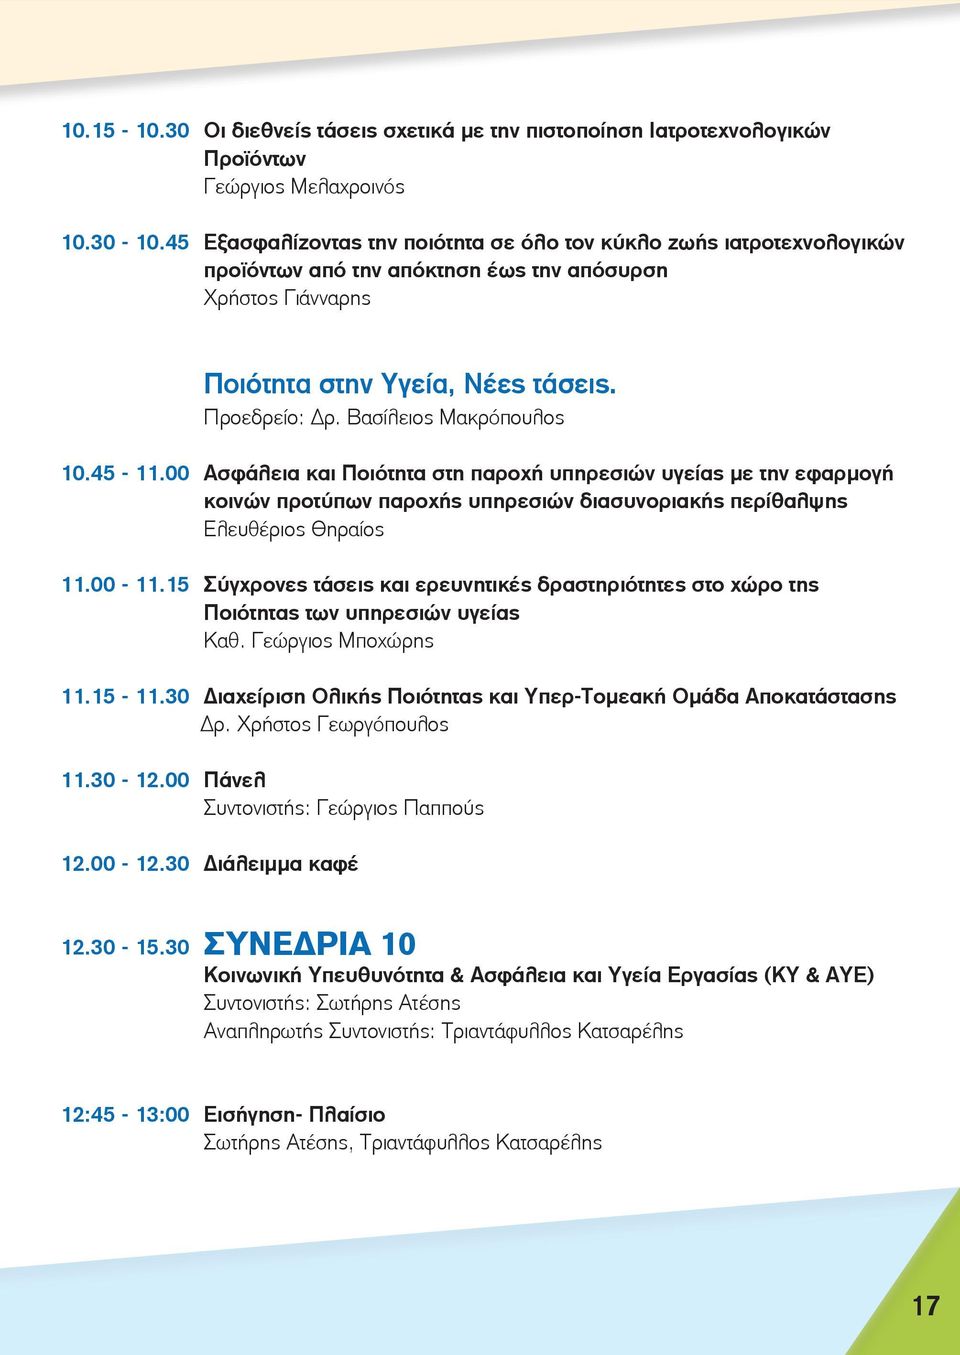 Βασίλειος Μακρόπουλος 10.45-11.00 Ασφάλεια και Ποιότητα στη παροχή υπηρεσιών υγείας με την εφαρμογή κοινών προτύπων παροχής υπηρεσιών διασυνοριακής περίθαλψης Ελευθέριος Θηραίος 11.00-11.